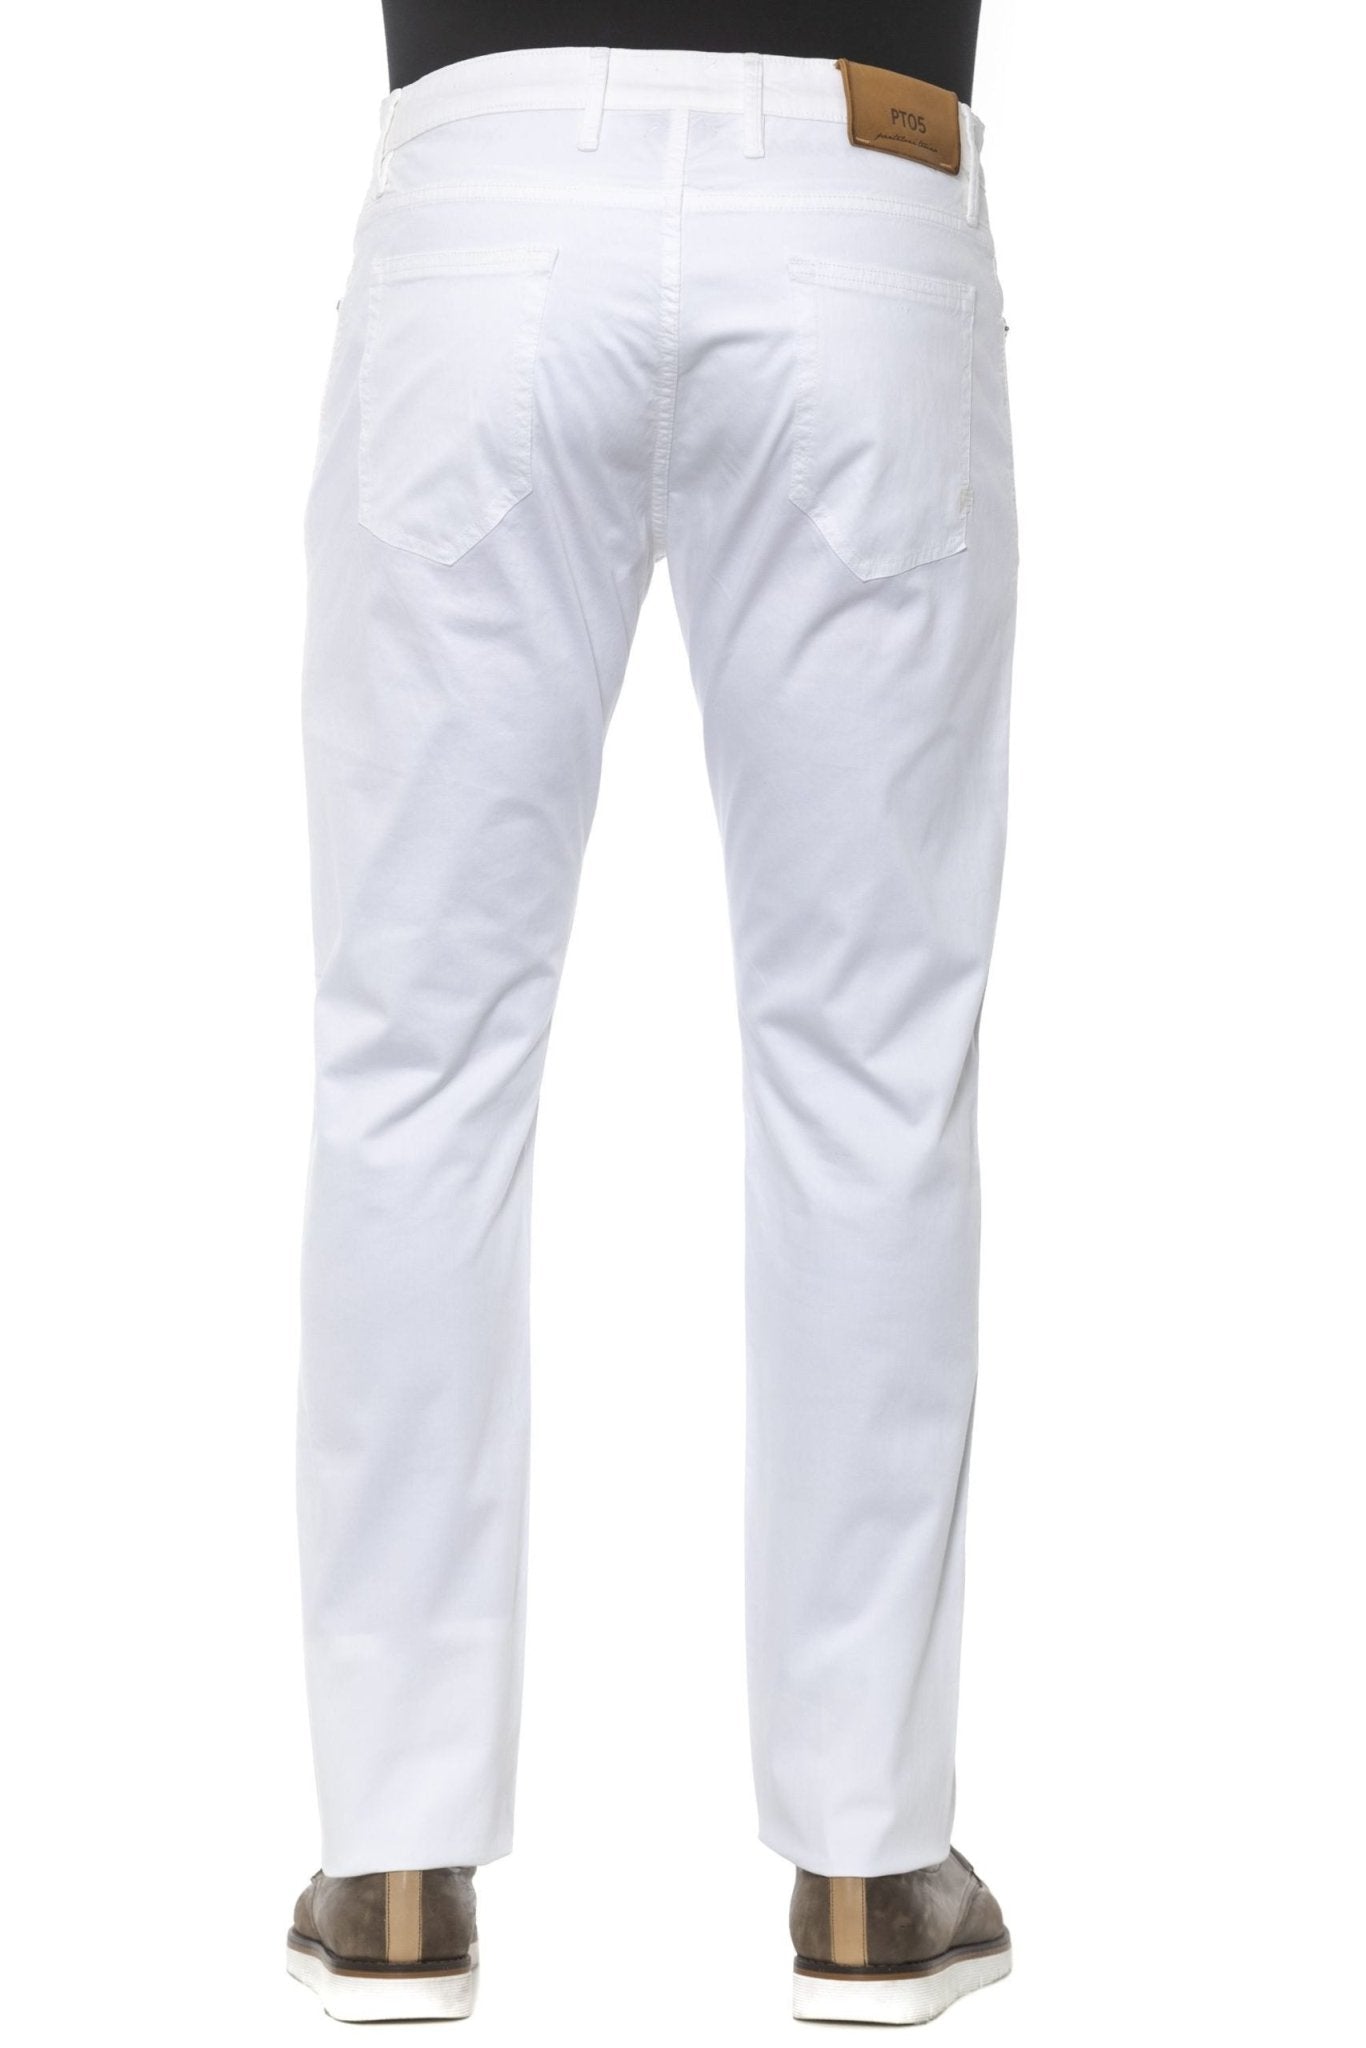 PT Torino White Cotton Jeans & Pant - Fizigo